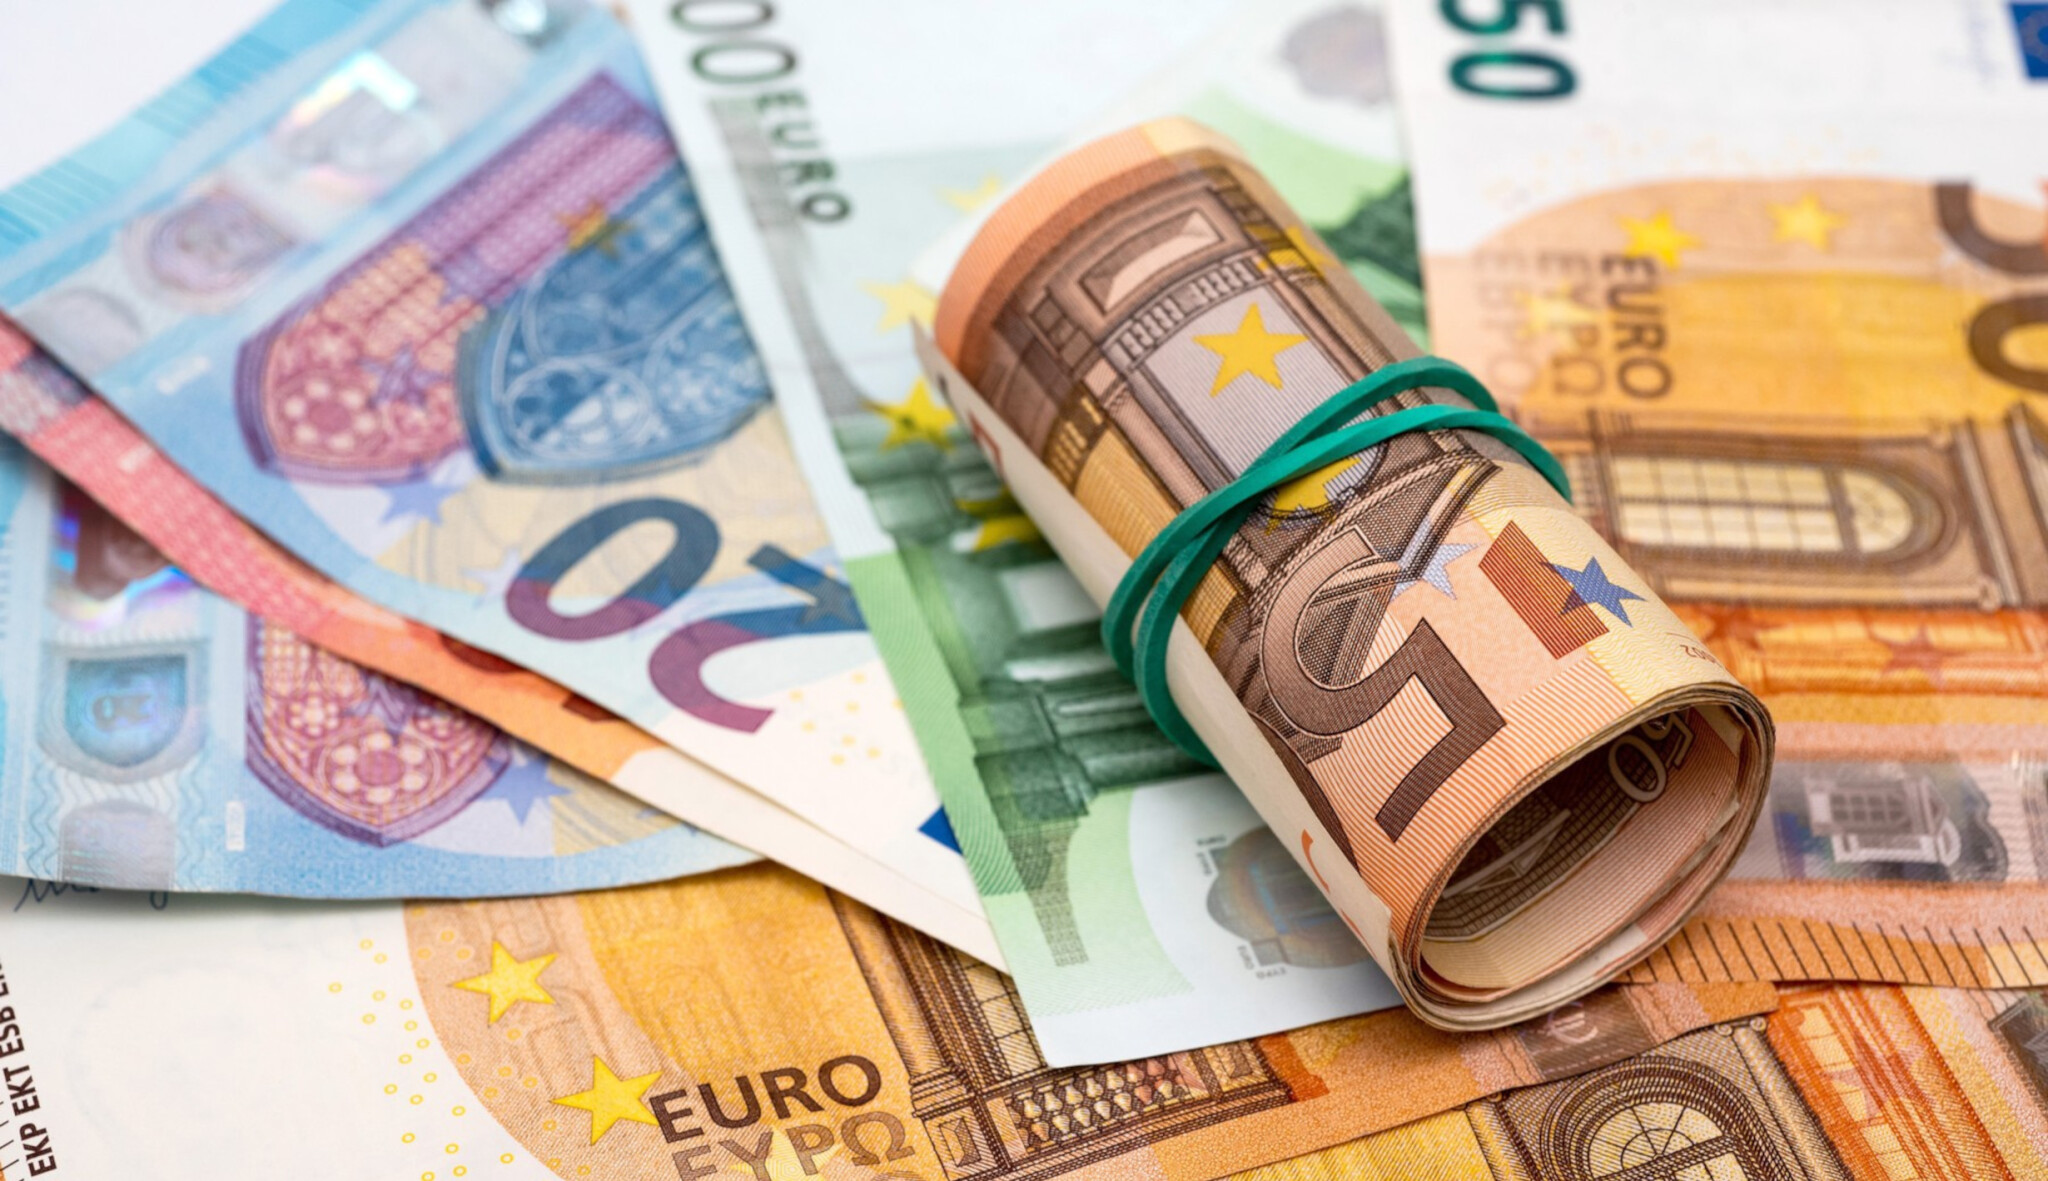 Daně a účetnictví v eurech? Stanjurův návrh je jen kosmetická zbytečnost, zní z firem